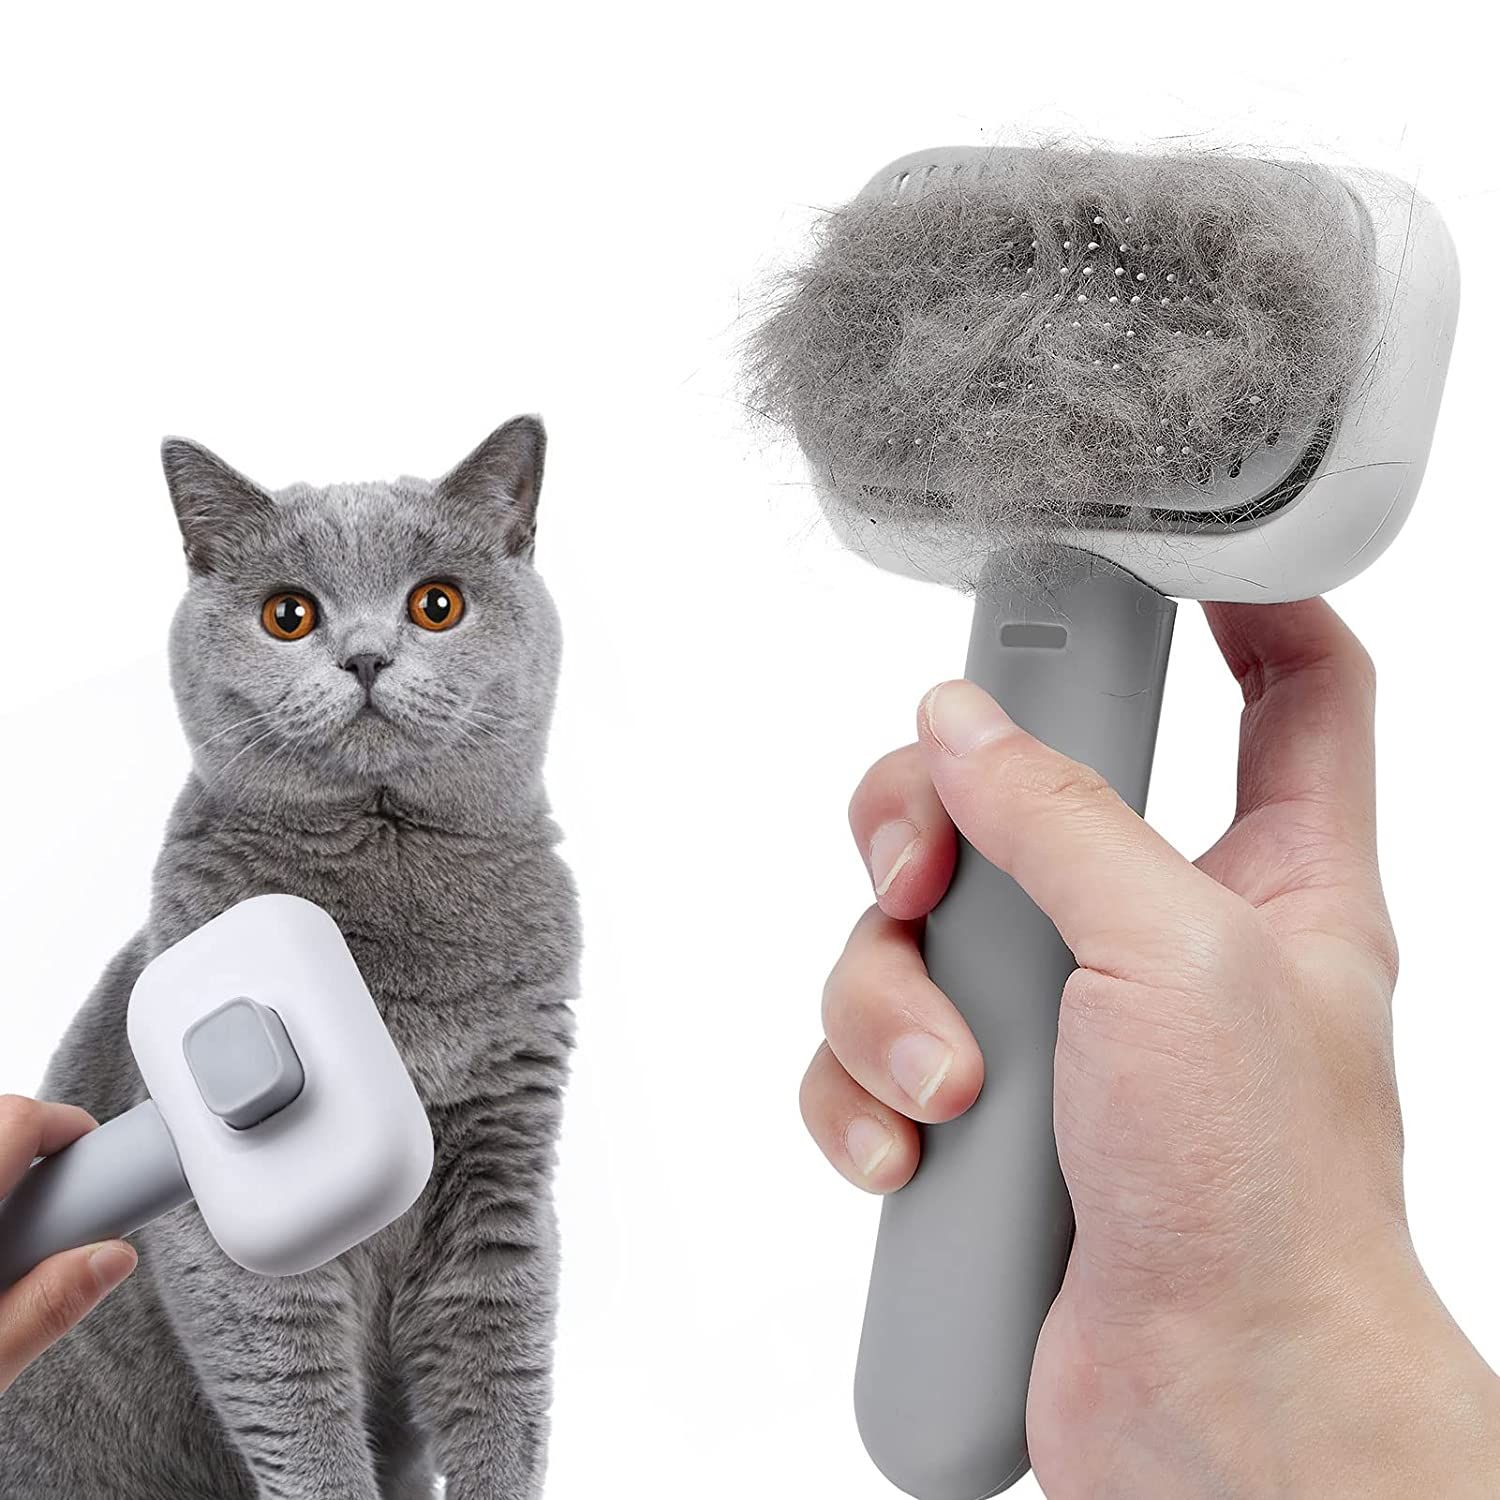 Паровая щетка для кошек как пользоваться. Паровая щетка для кошек. Паровая щётка для кошек с пришелец. 1u9921 Cat Brush-hand. Инструкция к паровой щетке для кошек.